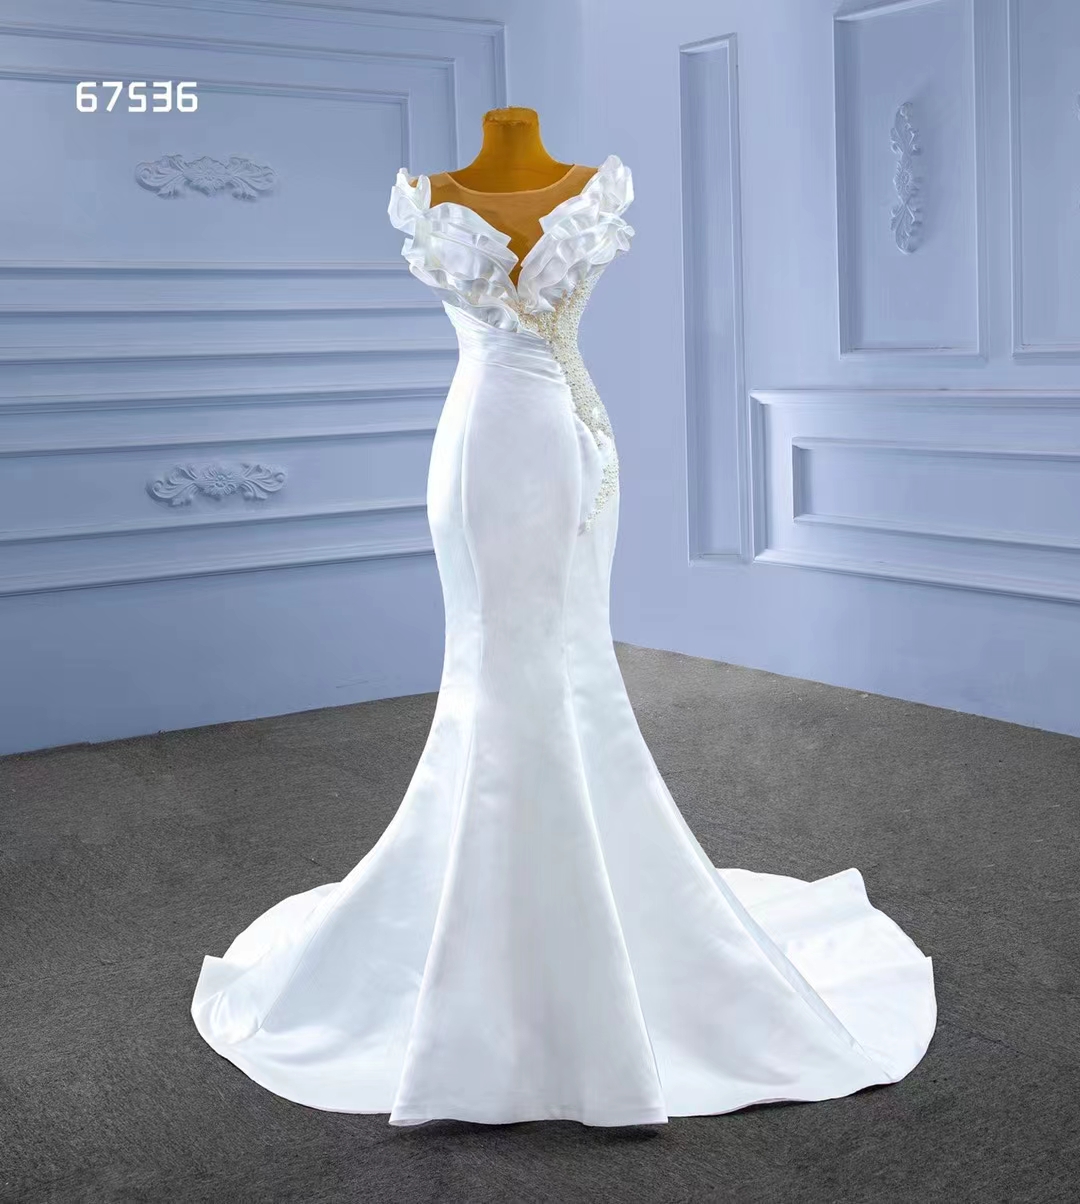 Meerjungfrau Hochzeitskleid sexy weiche satin weiße Trend Design Teiler Perlen SM67536